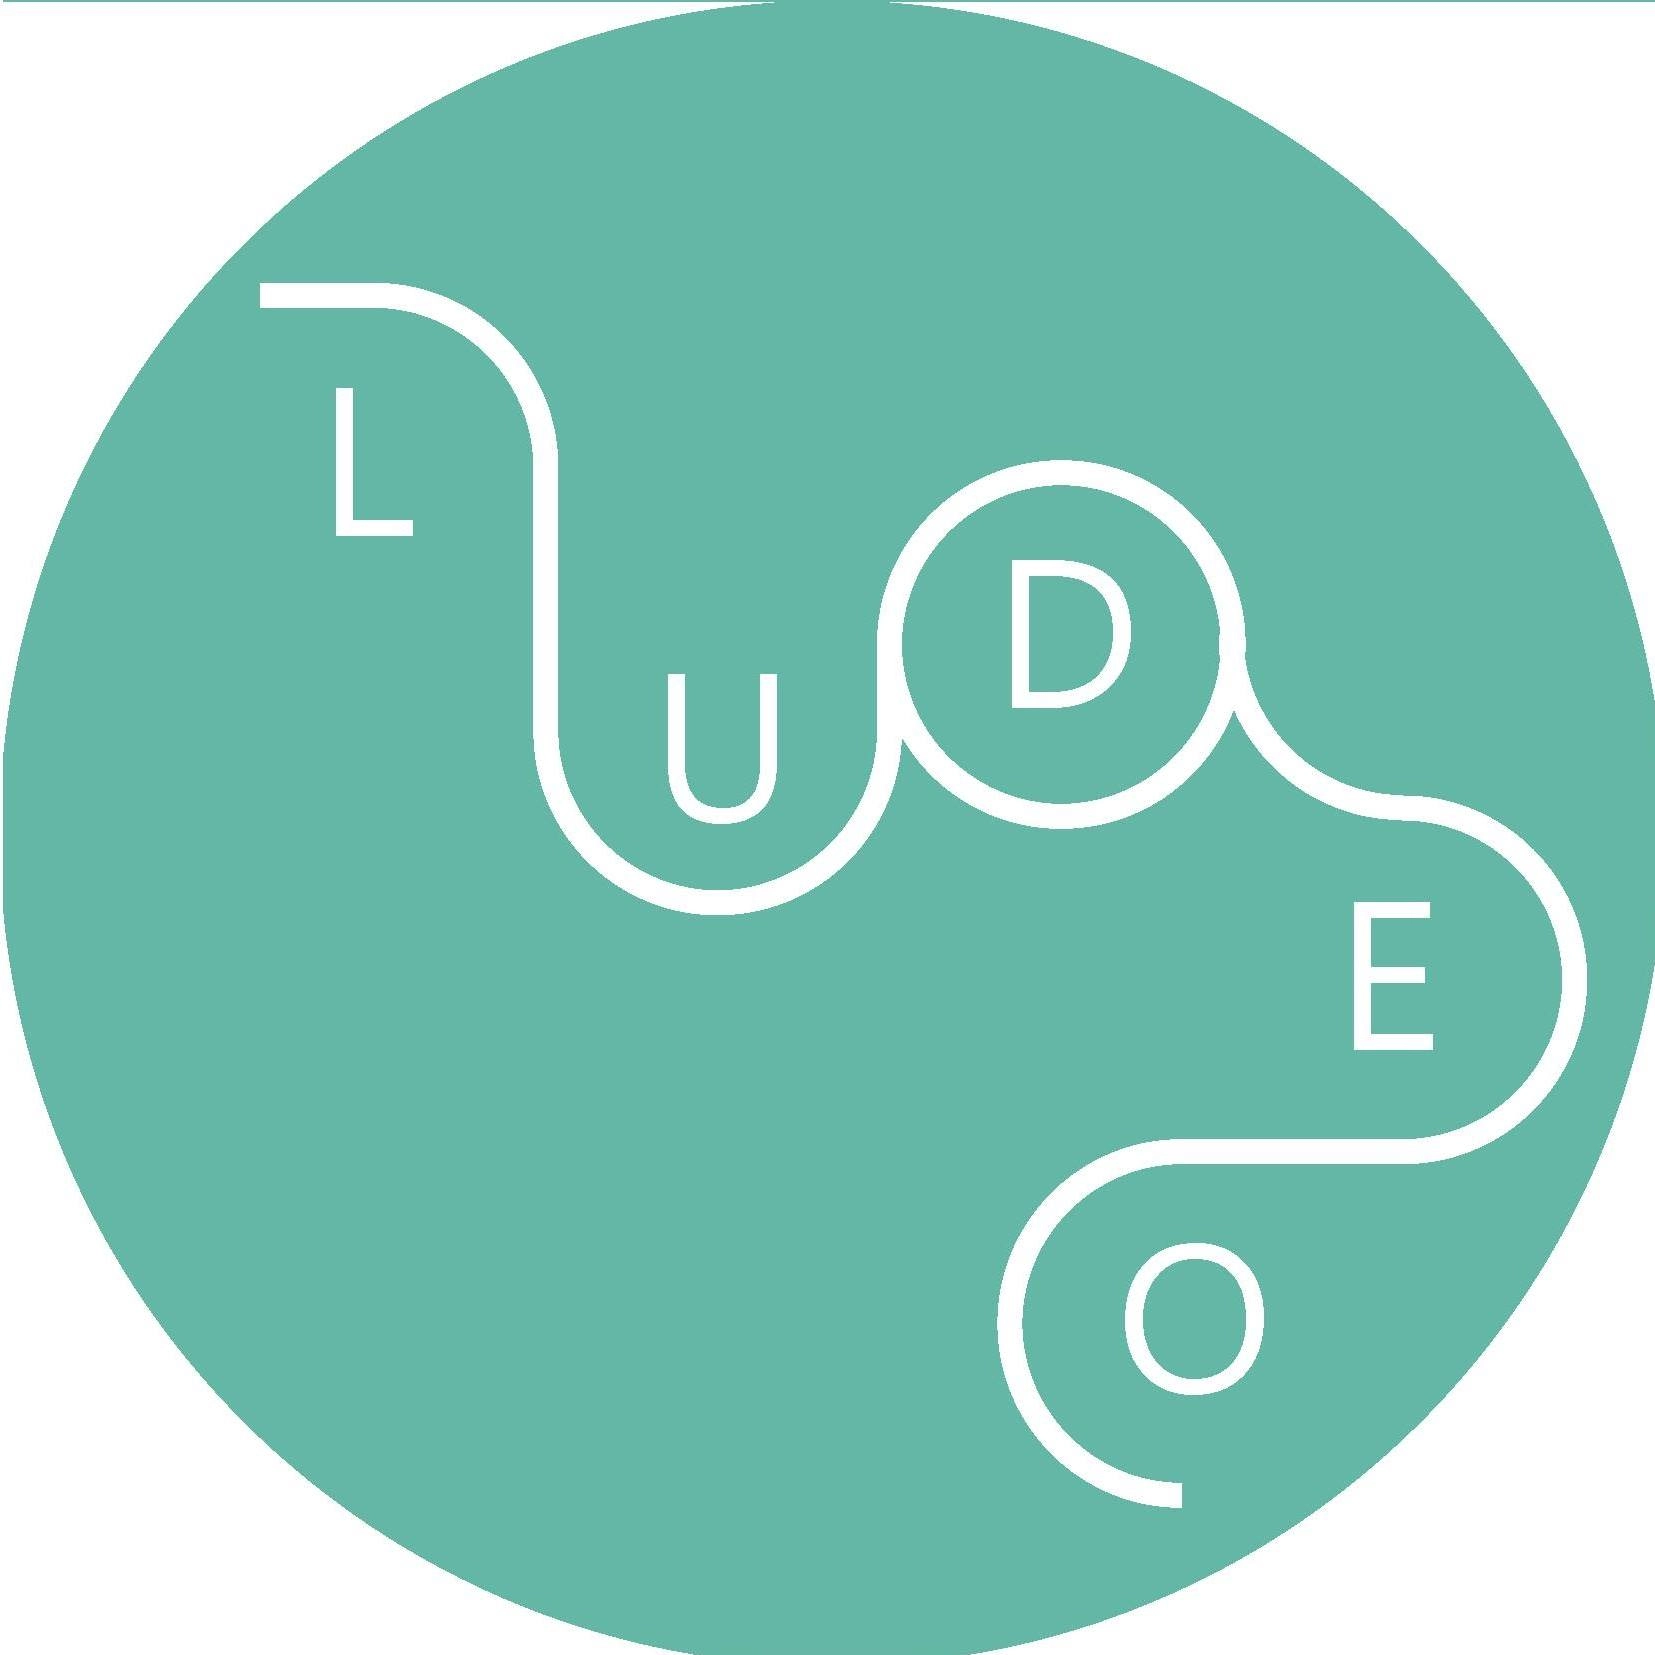 Ludeo - Centre de ressources ludiques de la Cocof